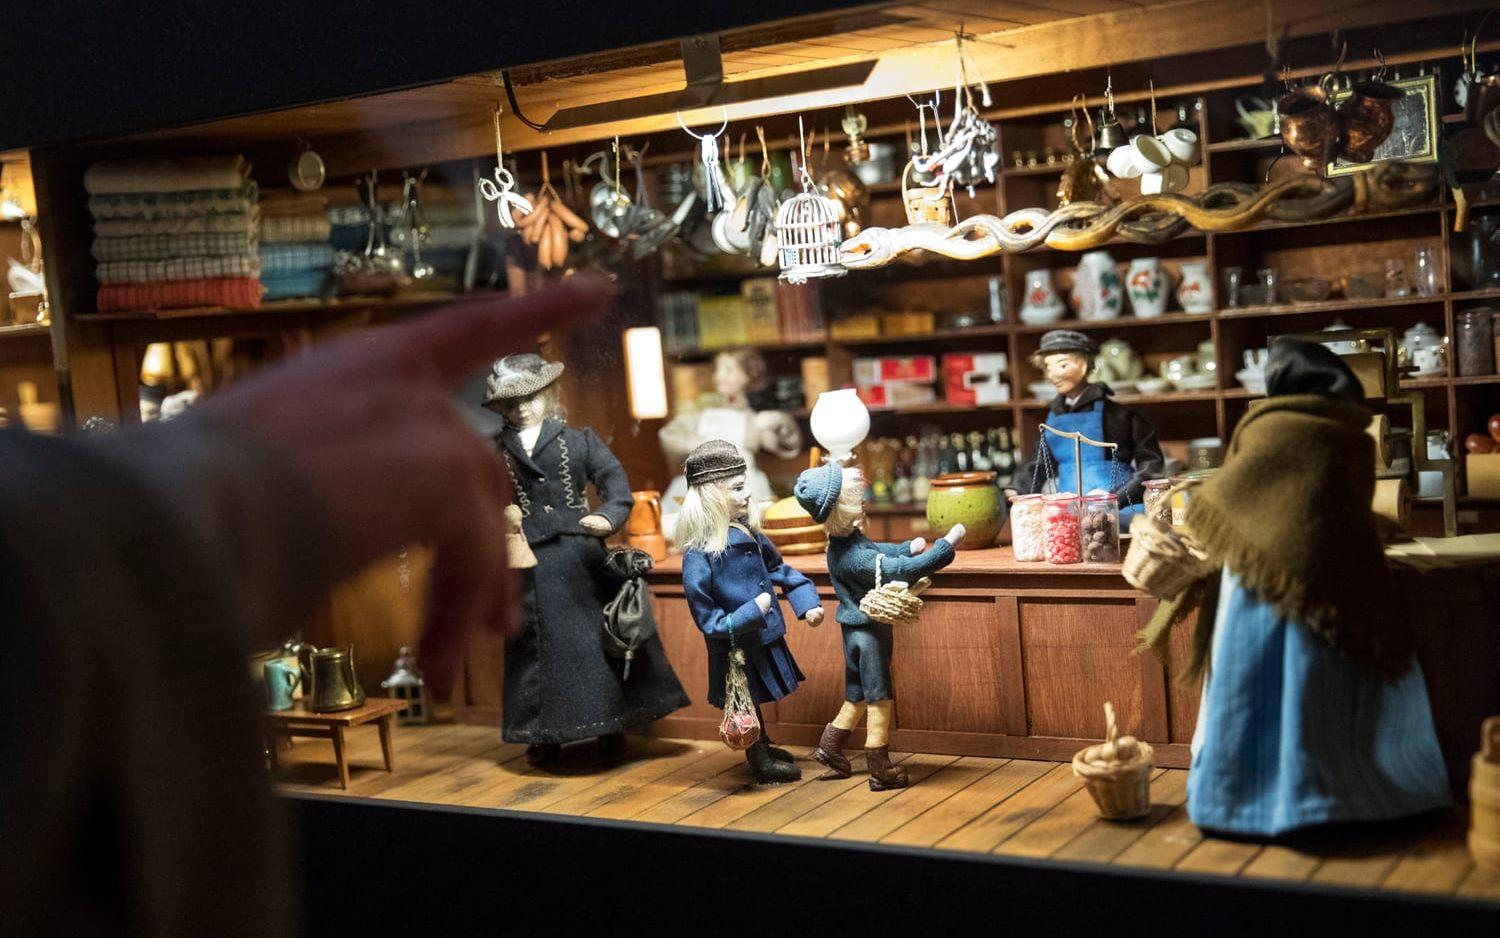 I affären. Konstnären Signhild Häller var född 1896 och har skapat sin barndoms handelsbod i ett av miniatyrskåpen, Då stod handlaren bakom disken och betjänade sina kunder. Bild: Anders Ylander